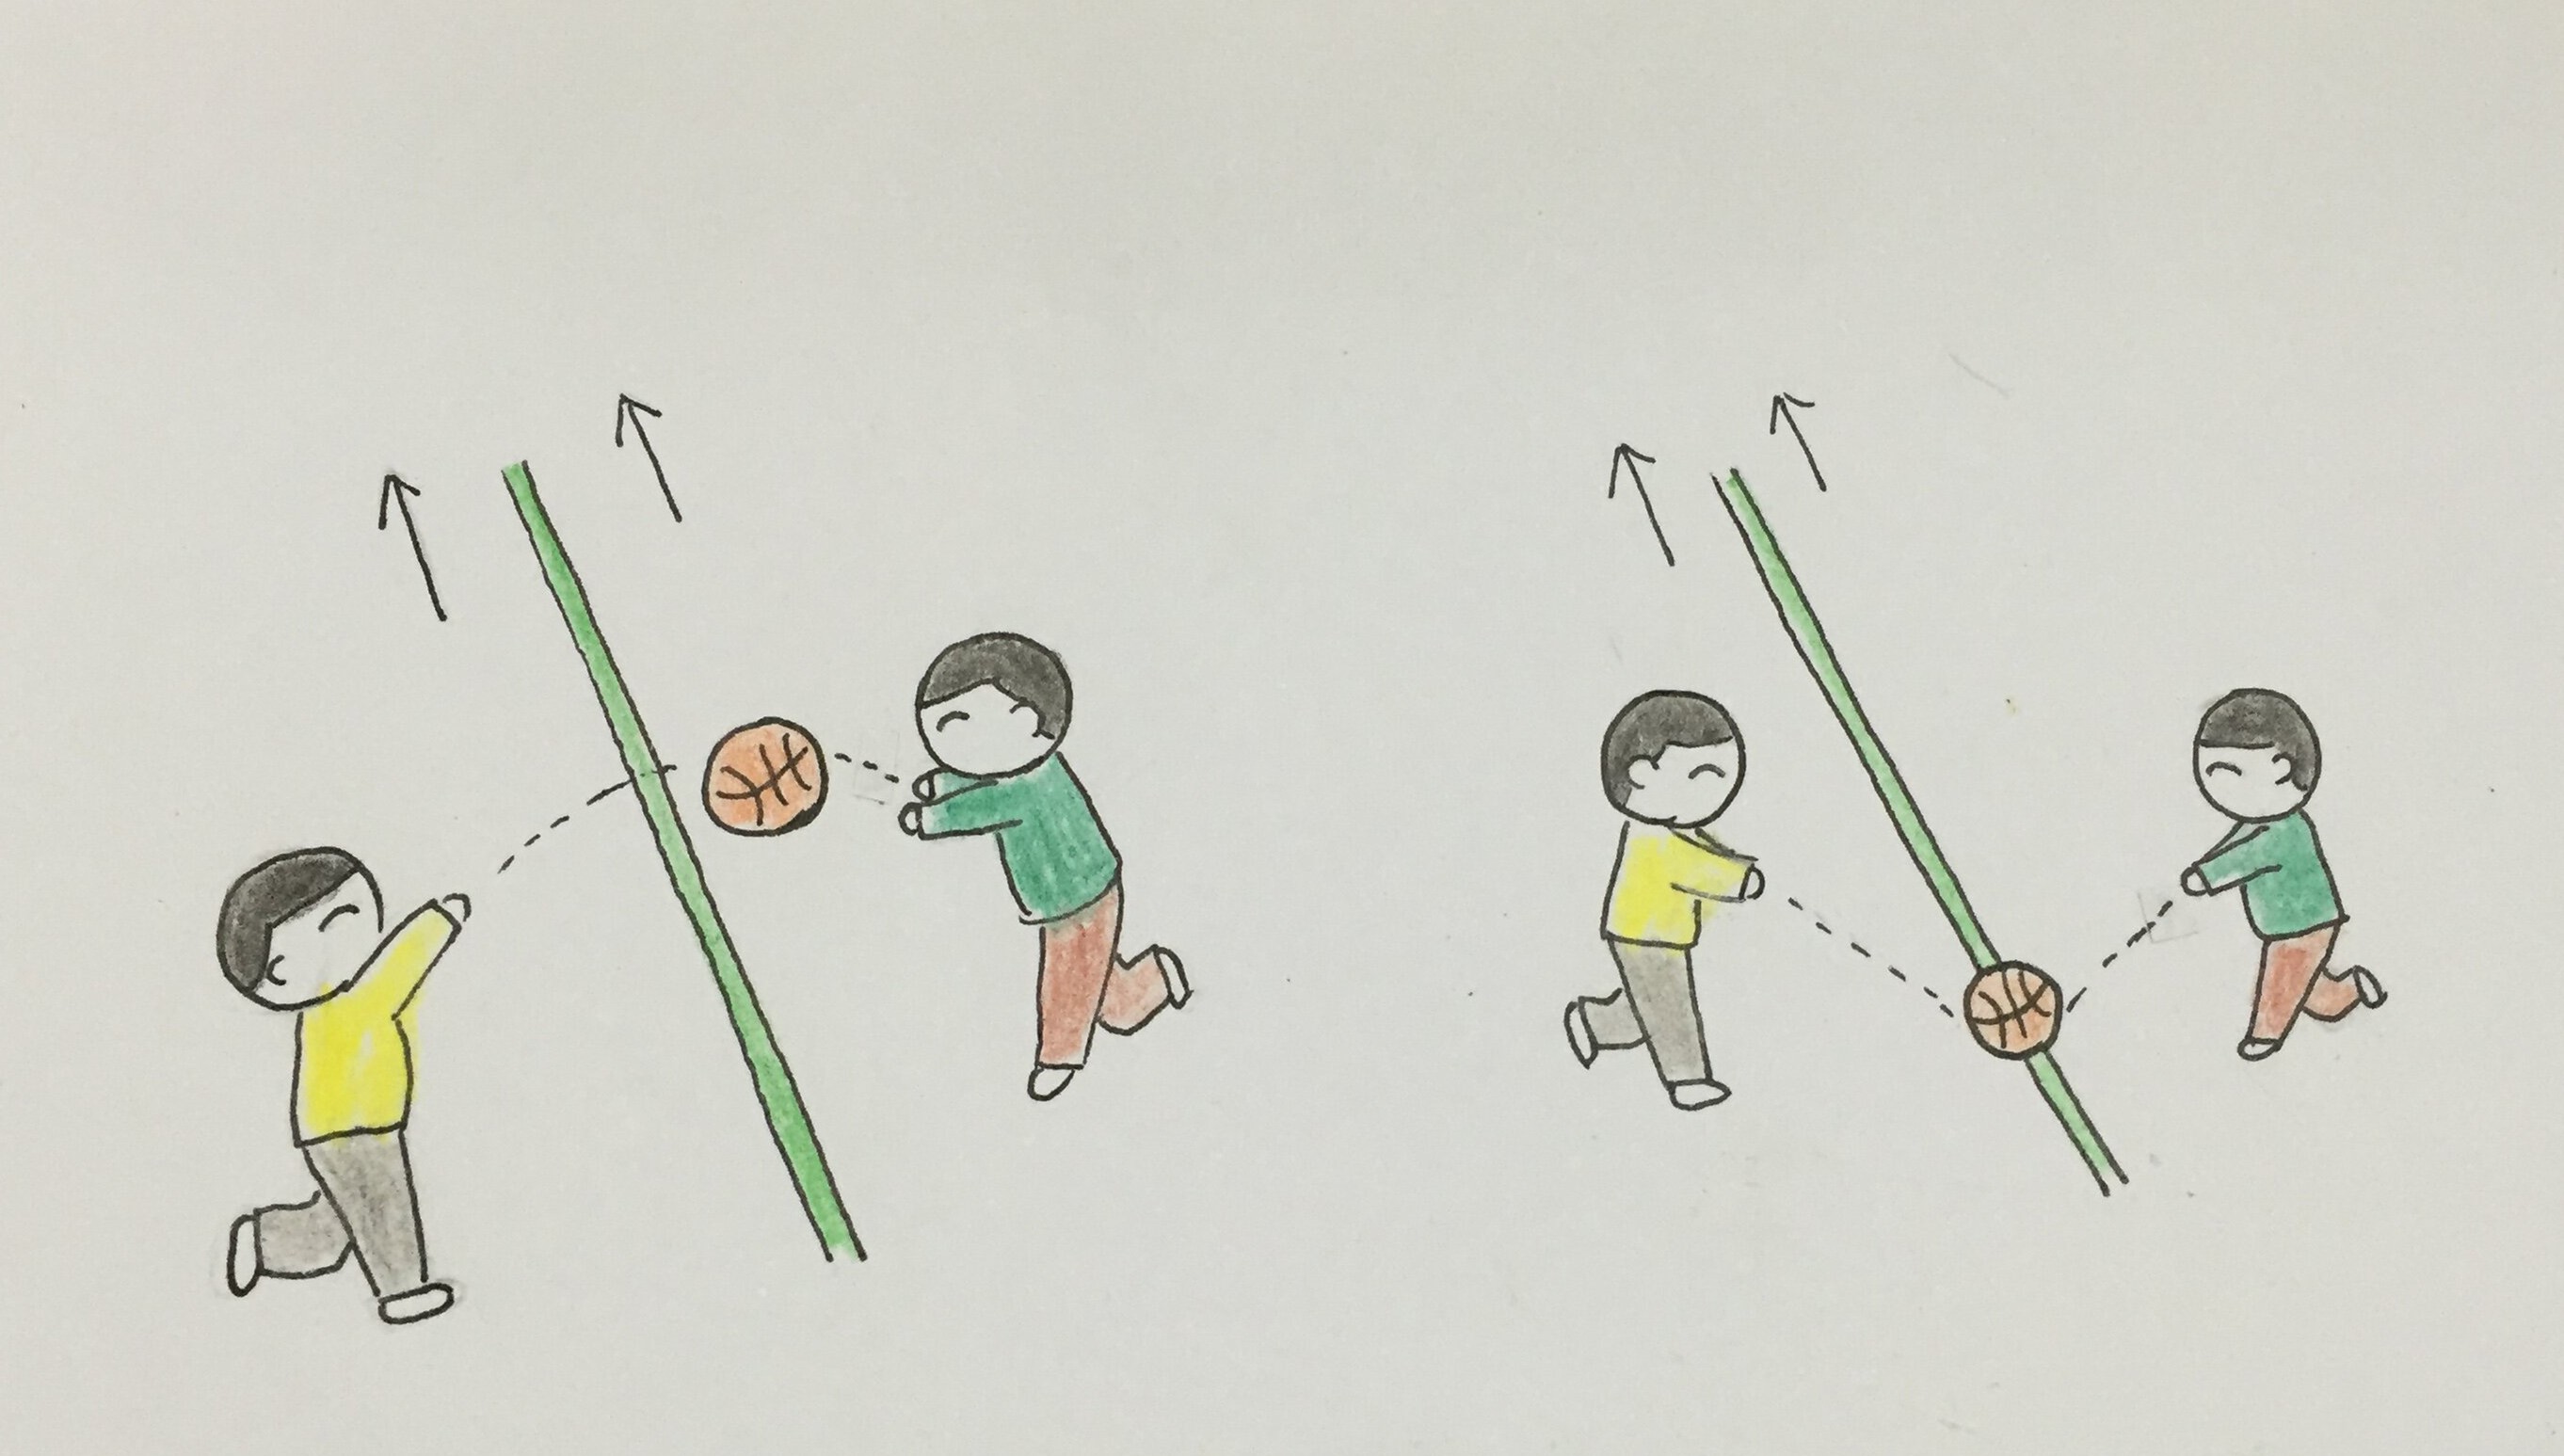 运动接抛球要点:在两人匀速向前运动中相互间的抛接球